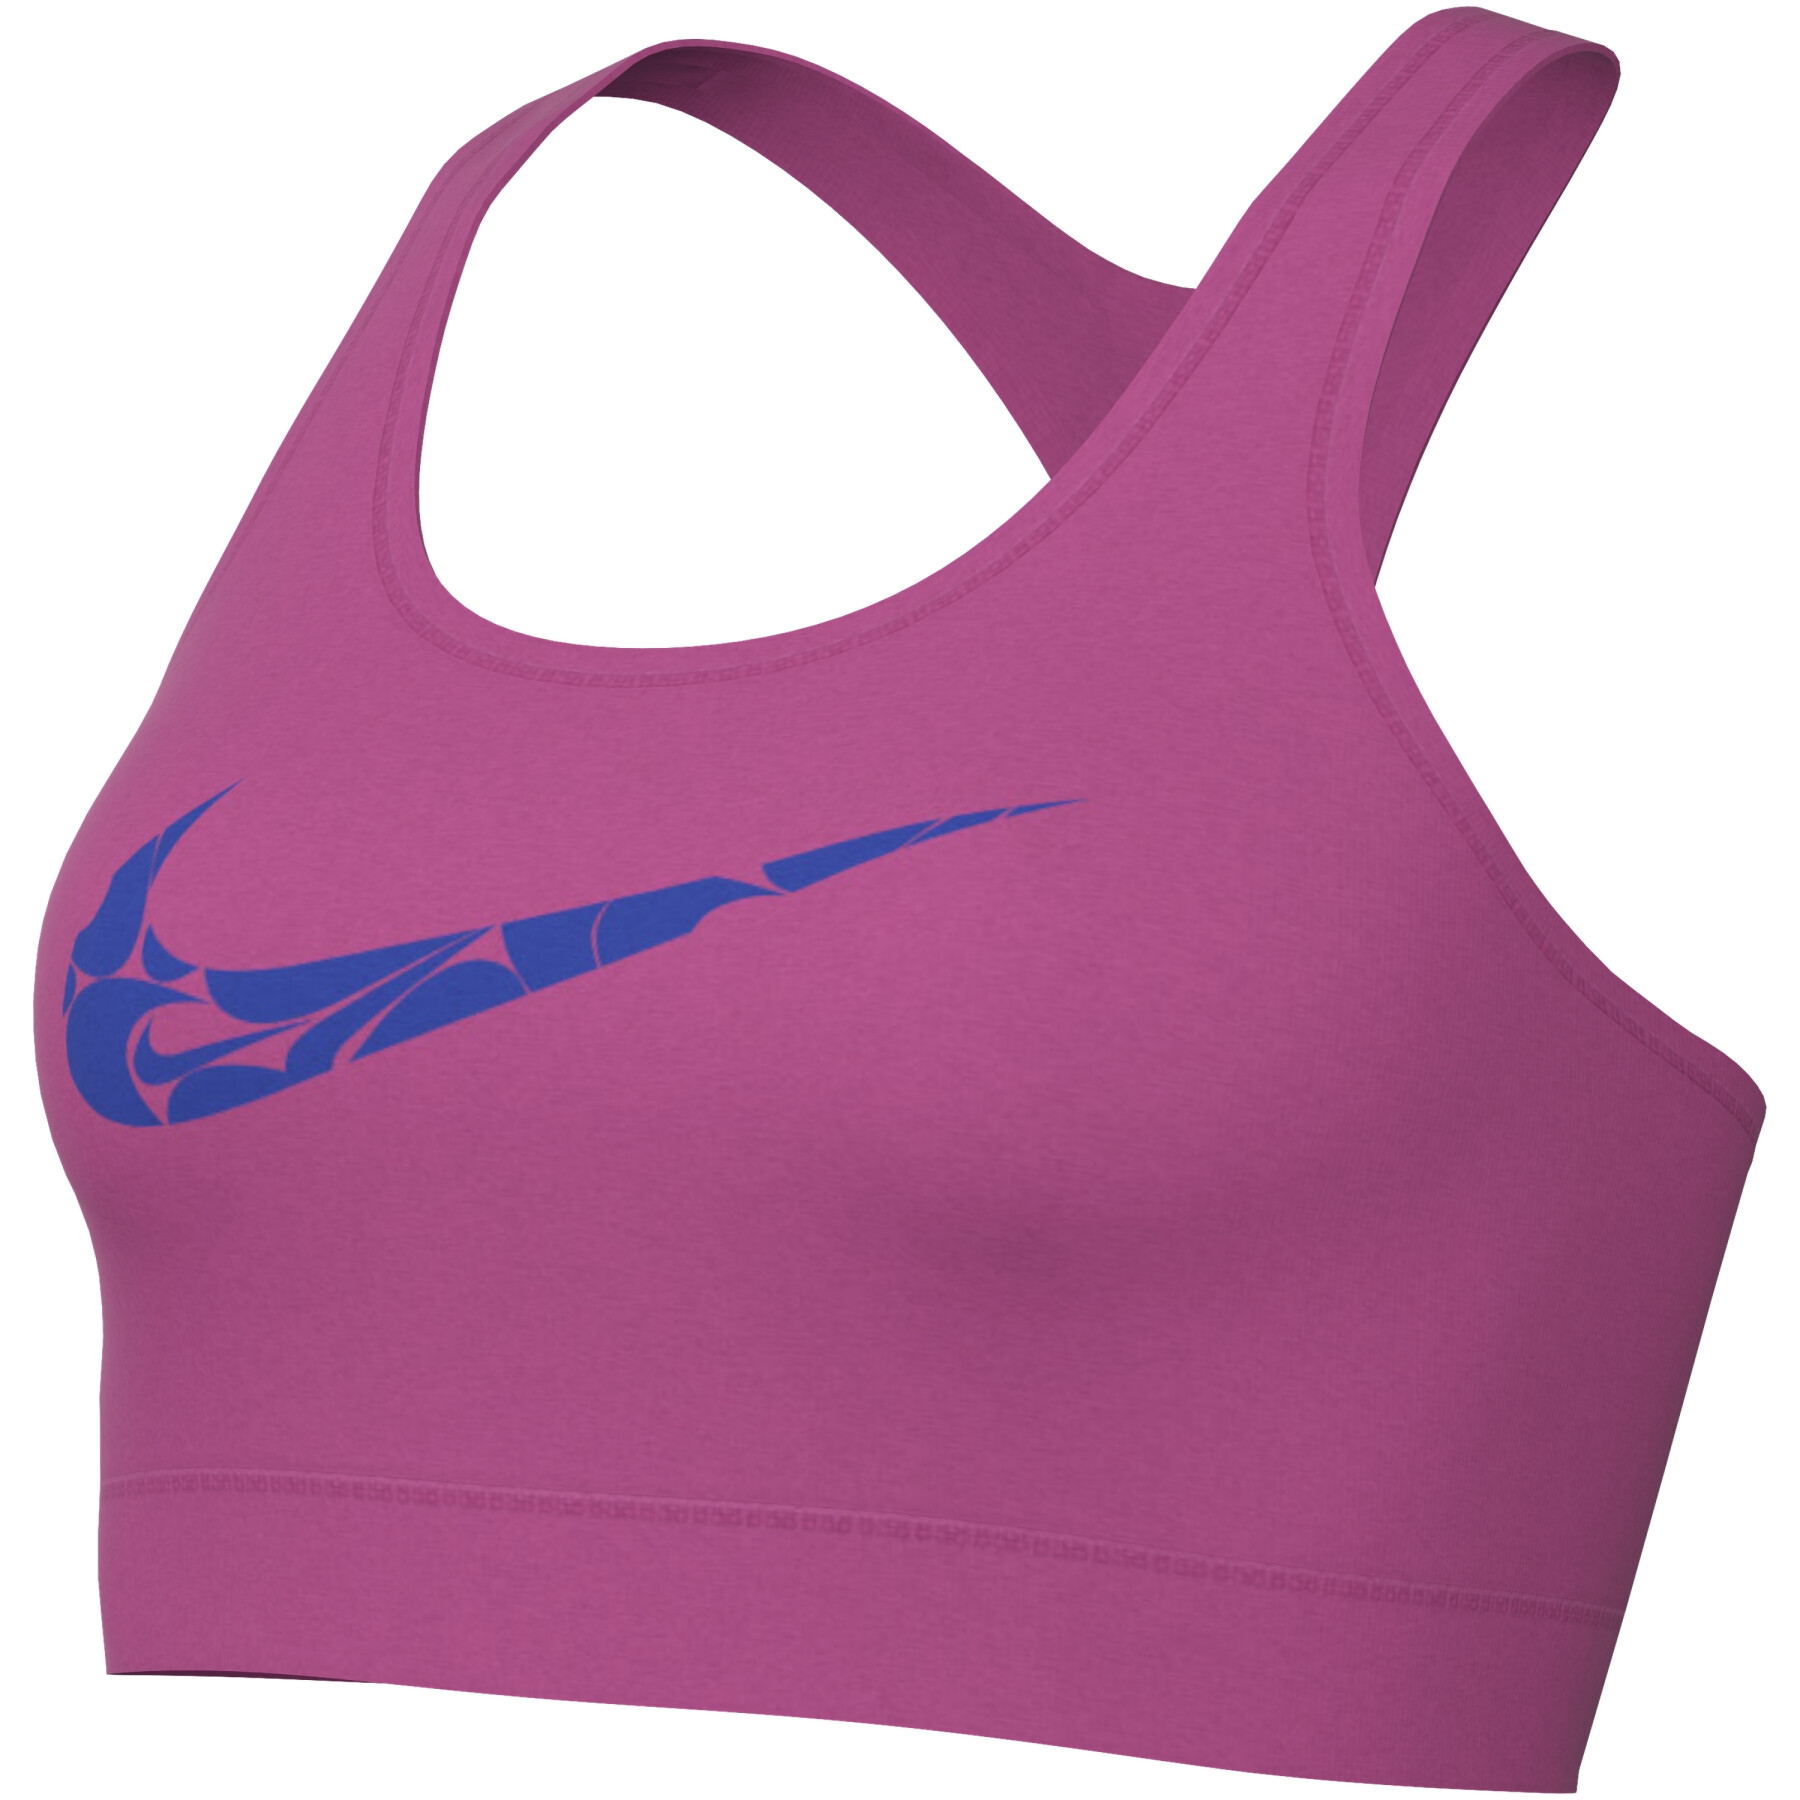 Women's unpadded bra Nike Swoosh